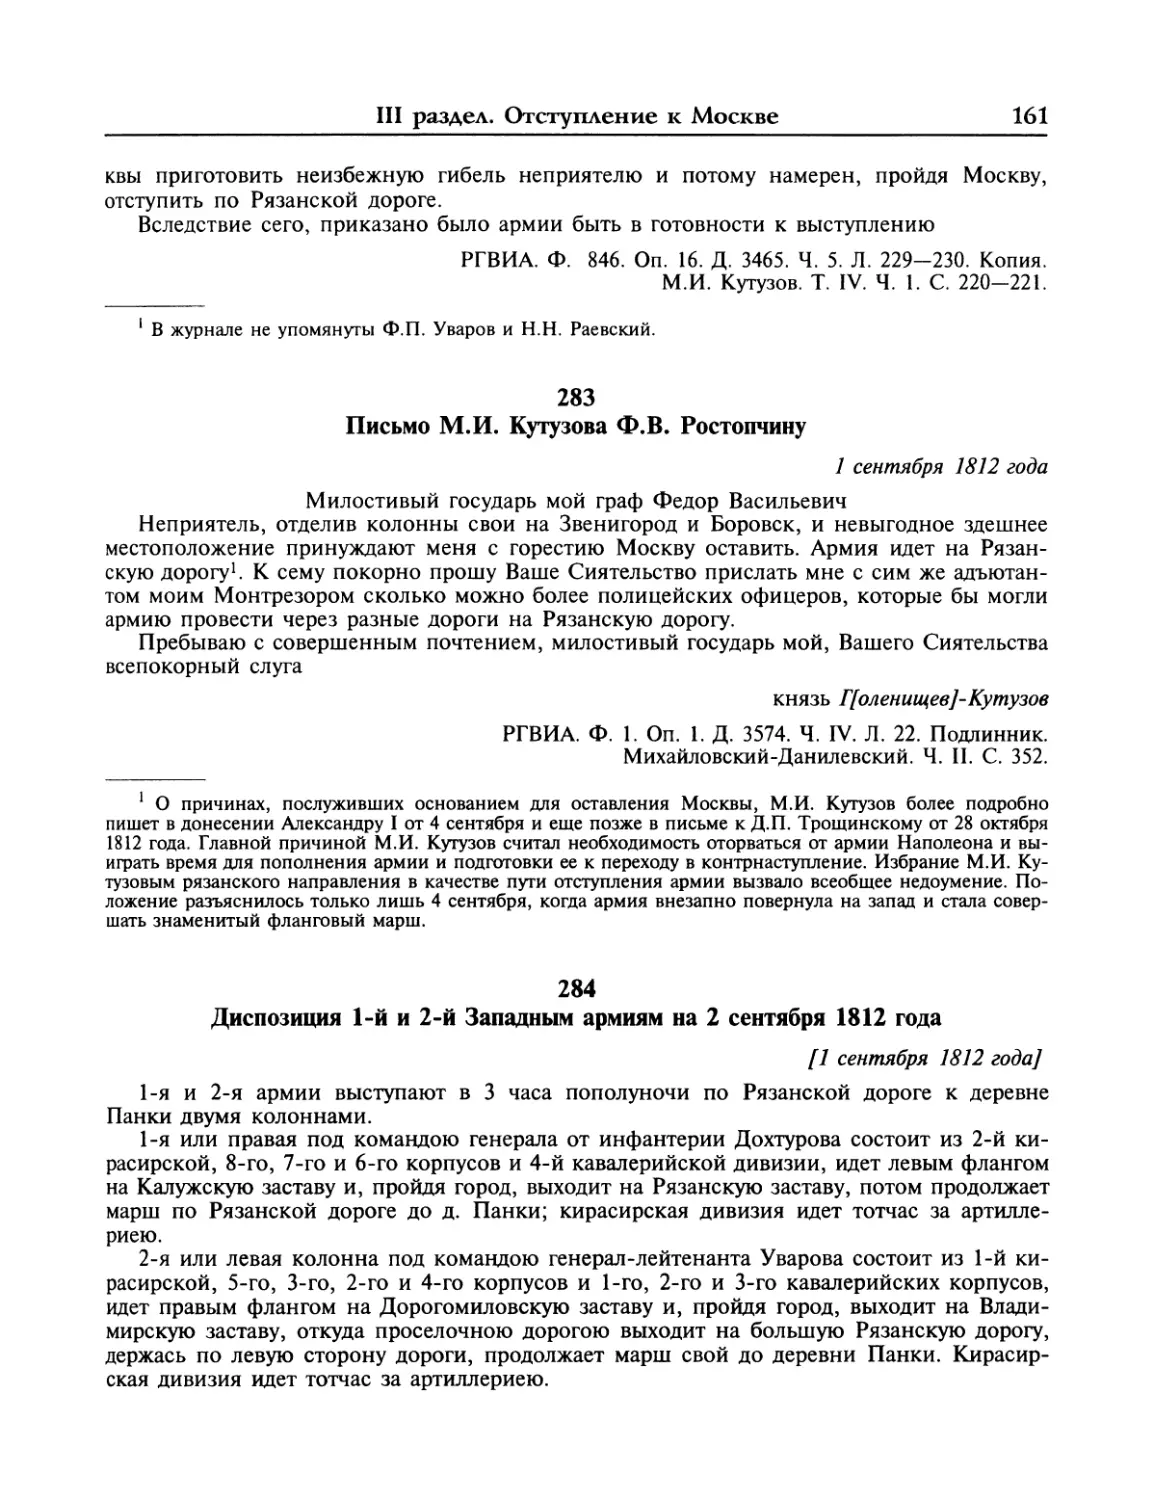 Письмо М.И.Кутузова Ф.В.Ростопчину
Диспозиция 1-й и 2-й Западным армиям на 2 сентября 1812 года